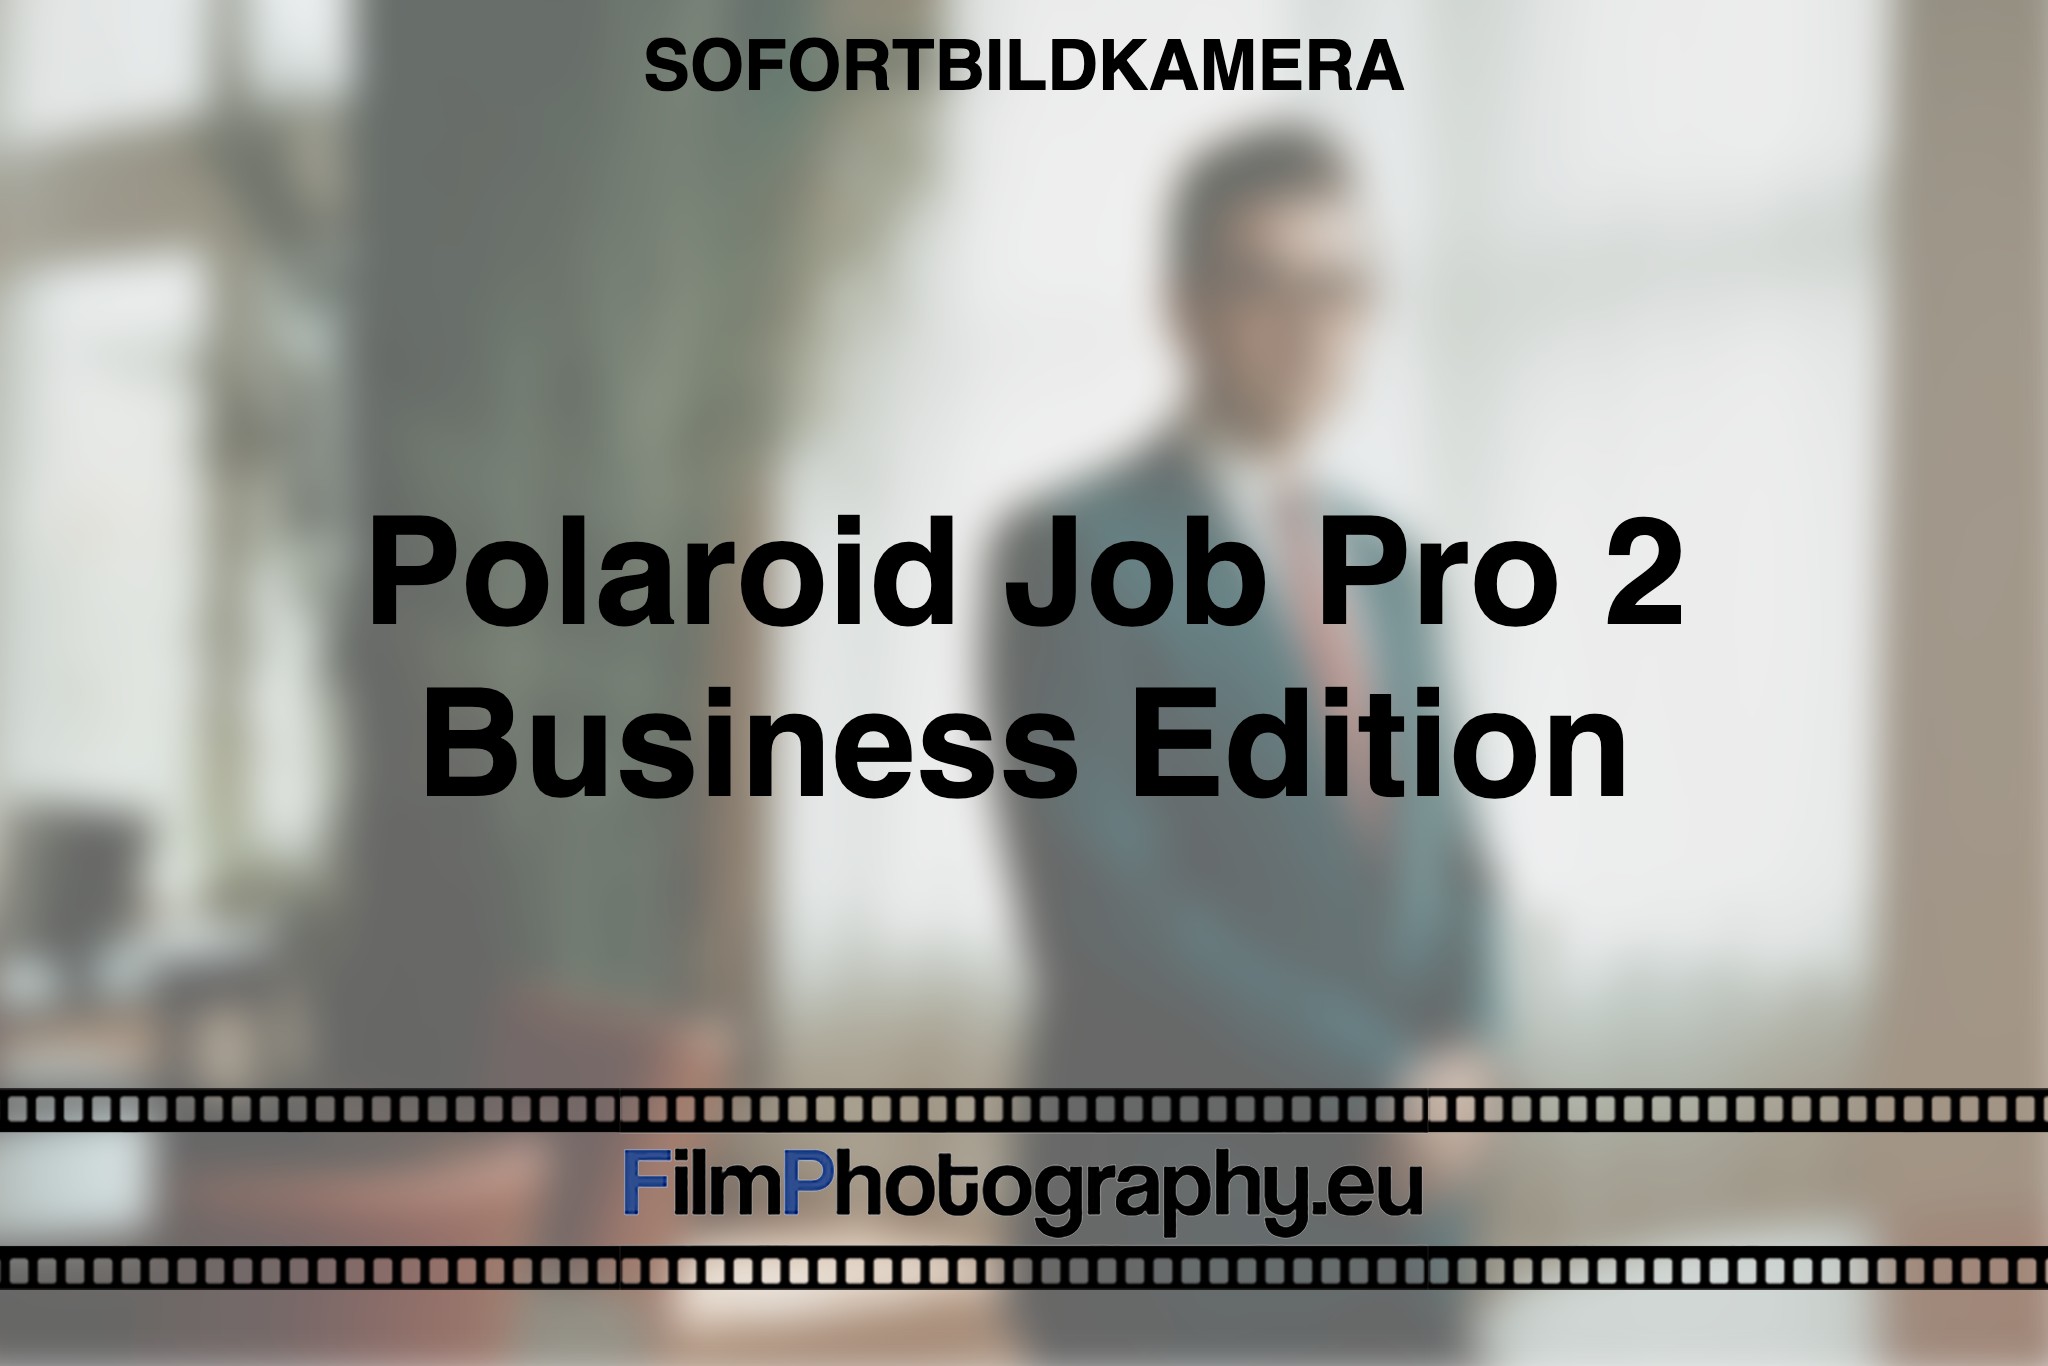 polaroid-job-pro-2-business-edition-sofortbildkamera-fp-bnv